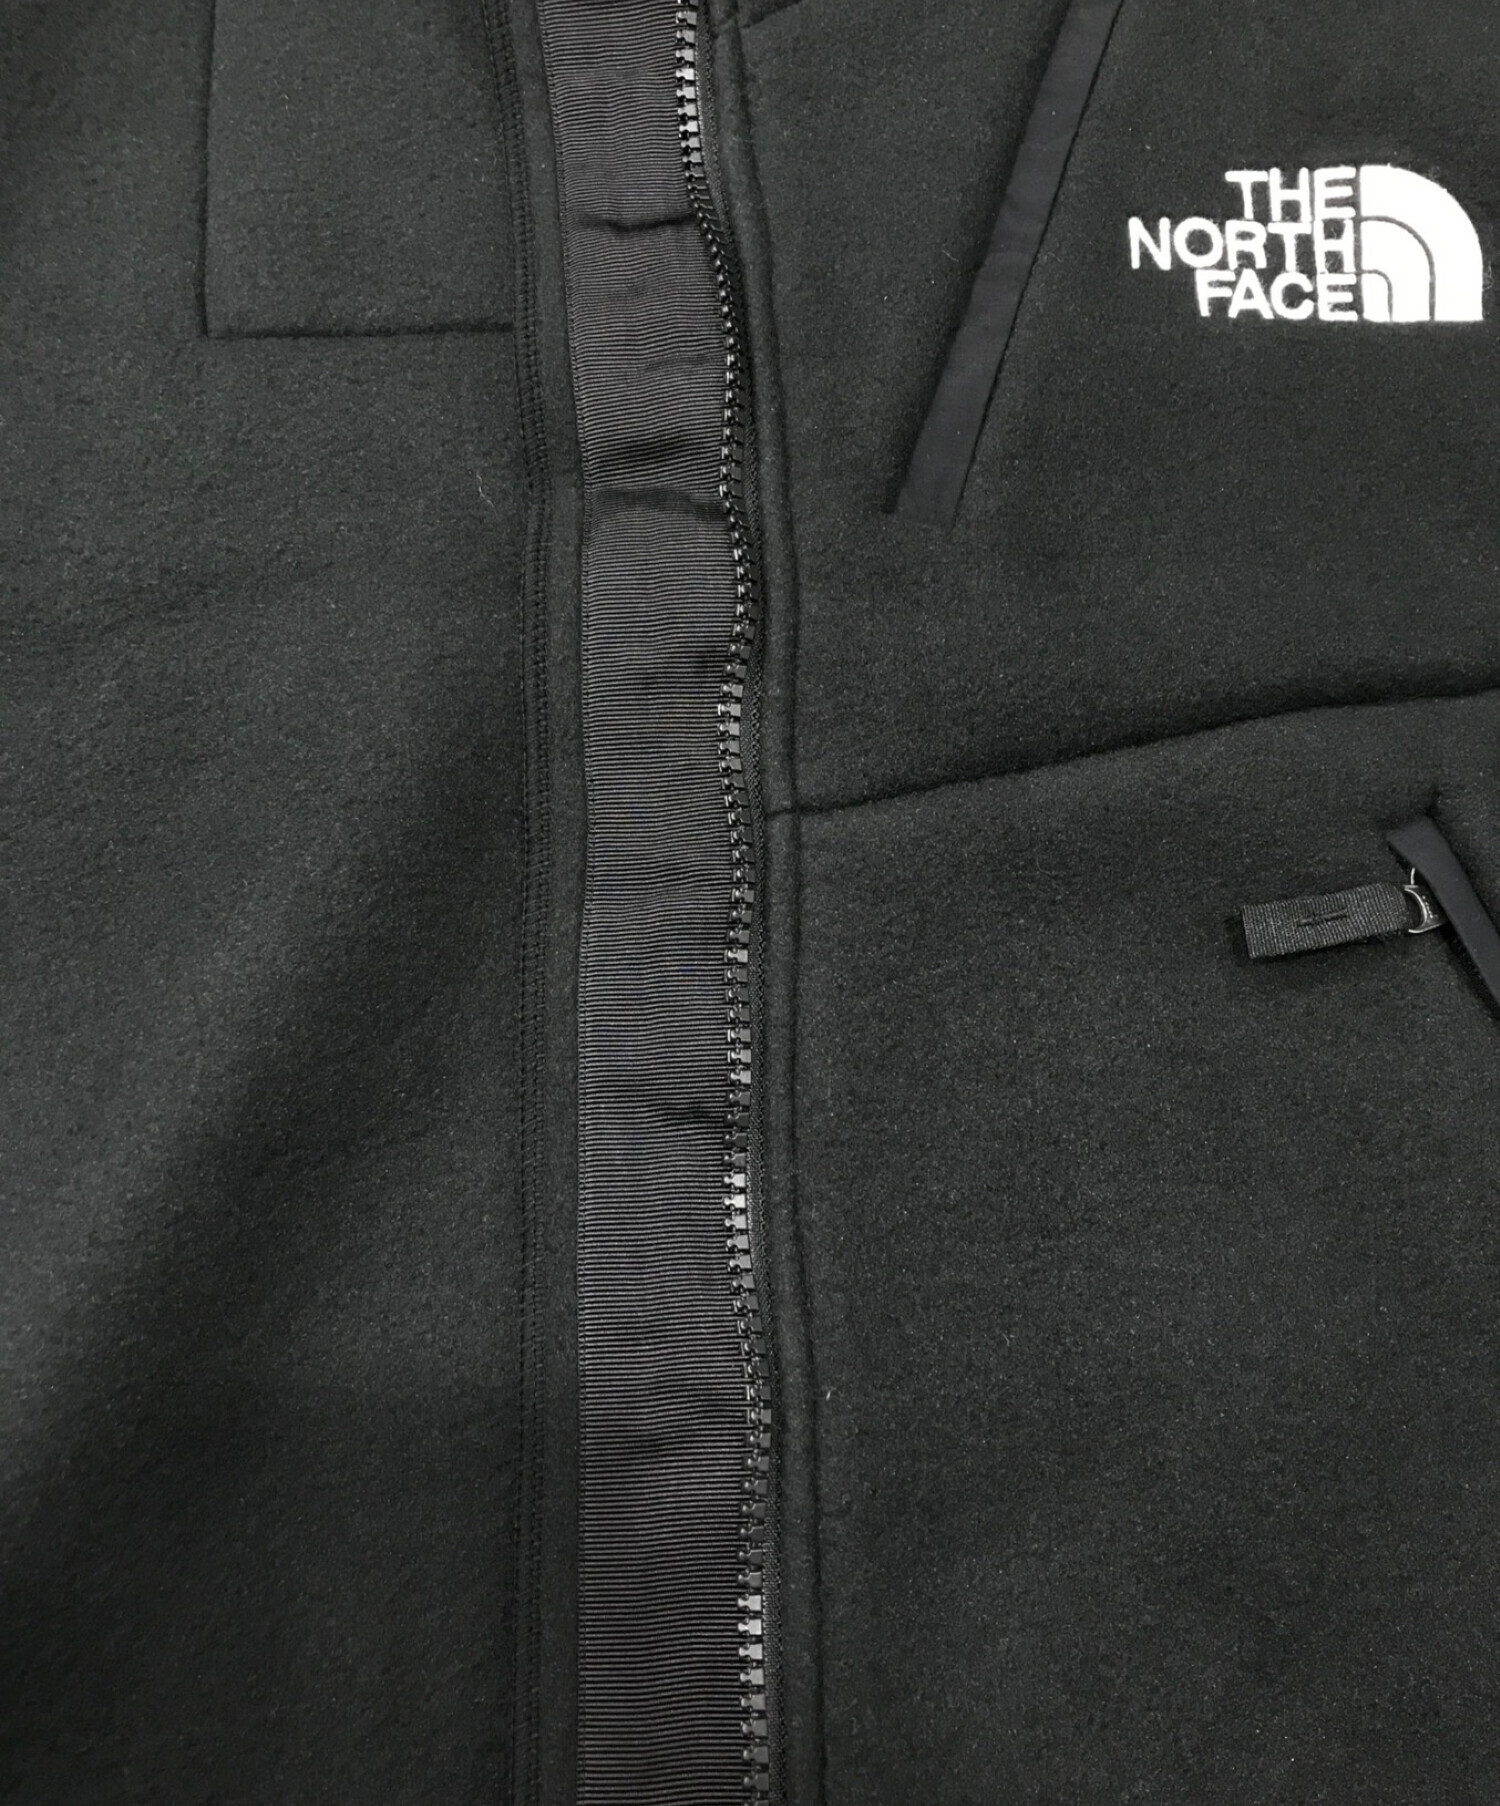 THE NORTH FACE (ザ ノース フェイス) Trans Antarctica Fleece Jacket　 トランスアンタークティカフリースジャケット ブラック サイズ:L